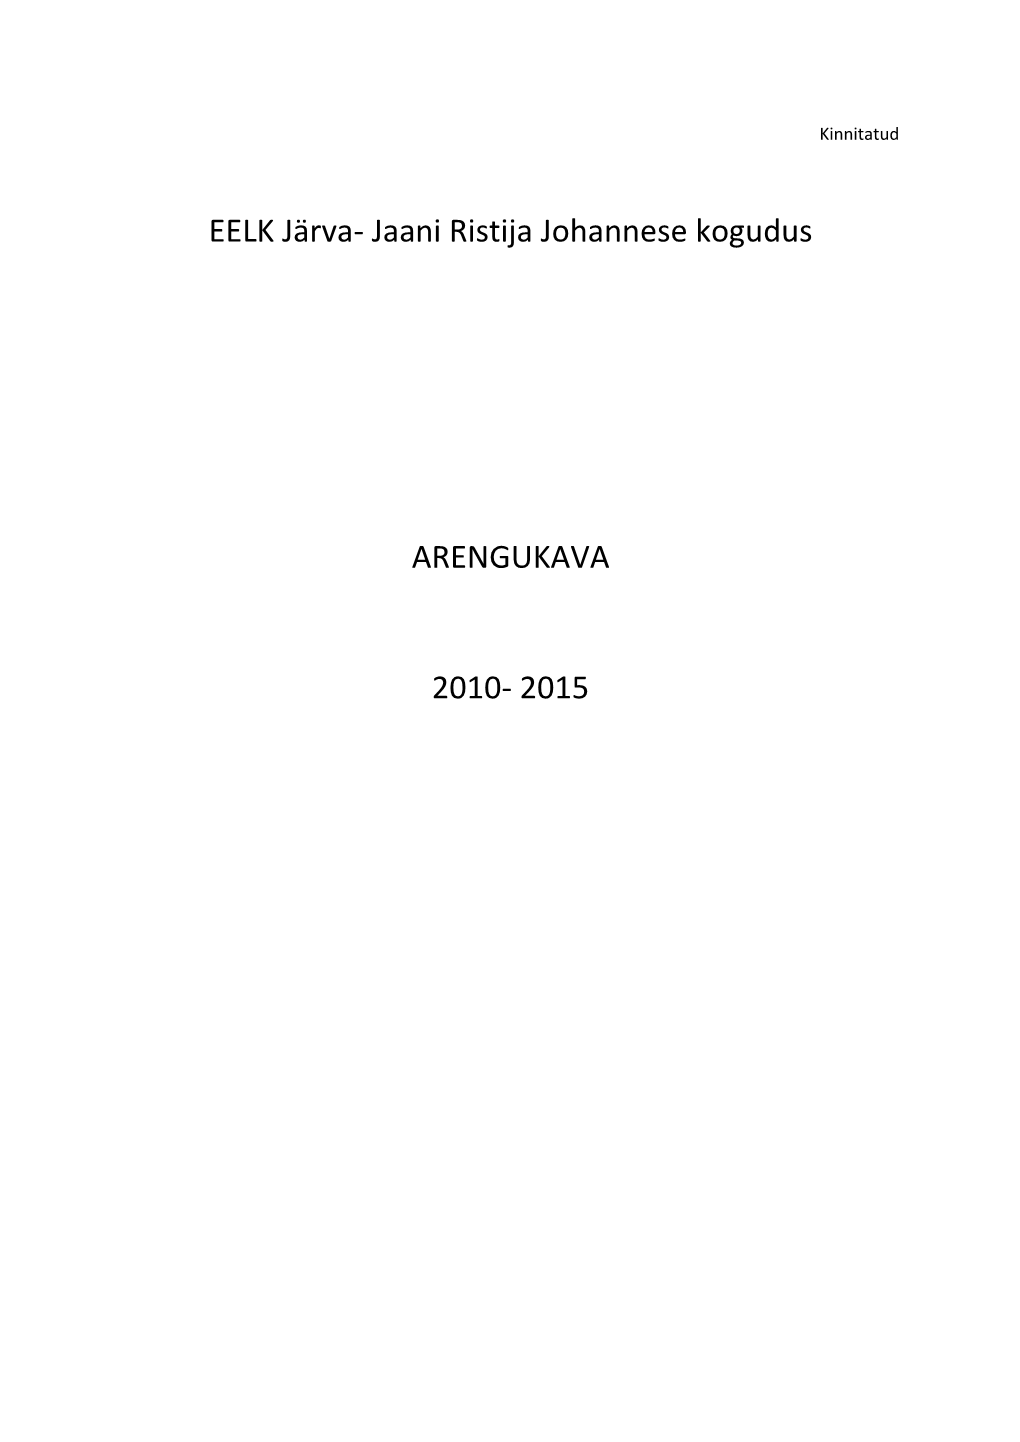 EELK Järva- Jaani Ristija Johannese Kogudus ARENGUKAVA 2010- 2015